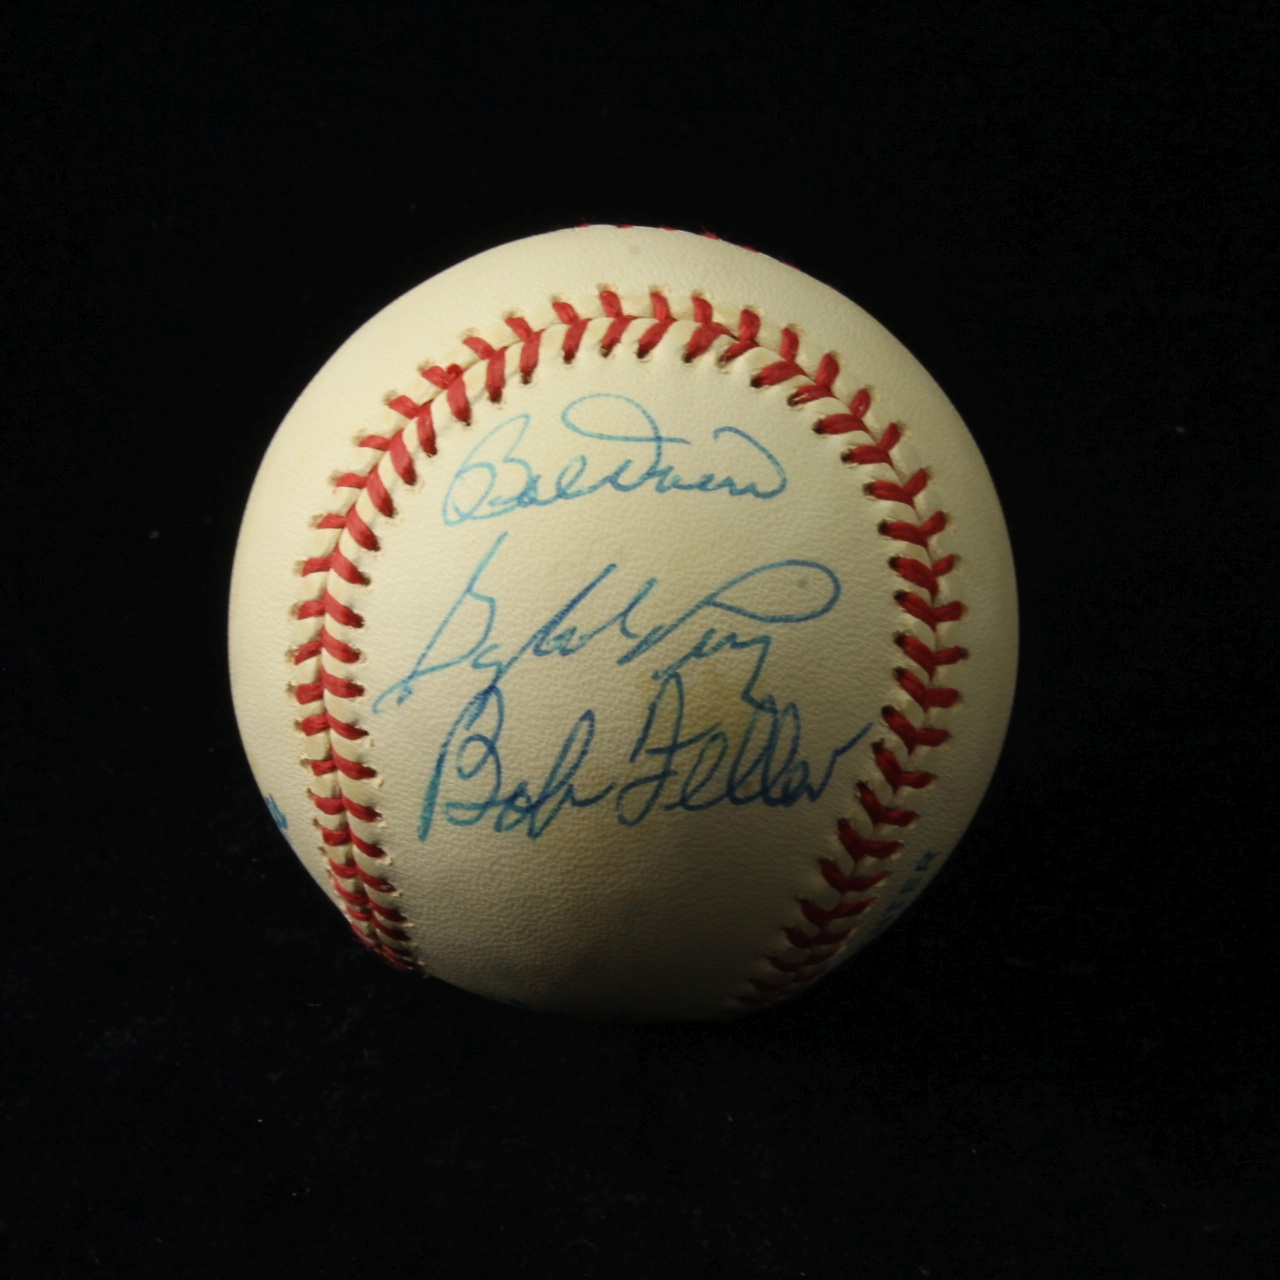 Autographed Baseball, Gaylord Perry, Bob Doerr, Bob Feller